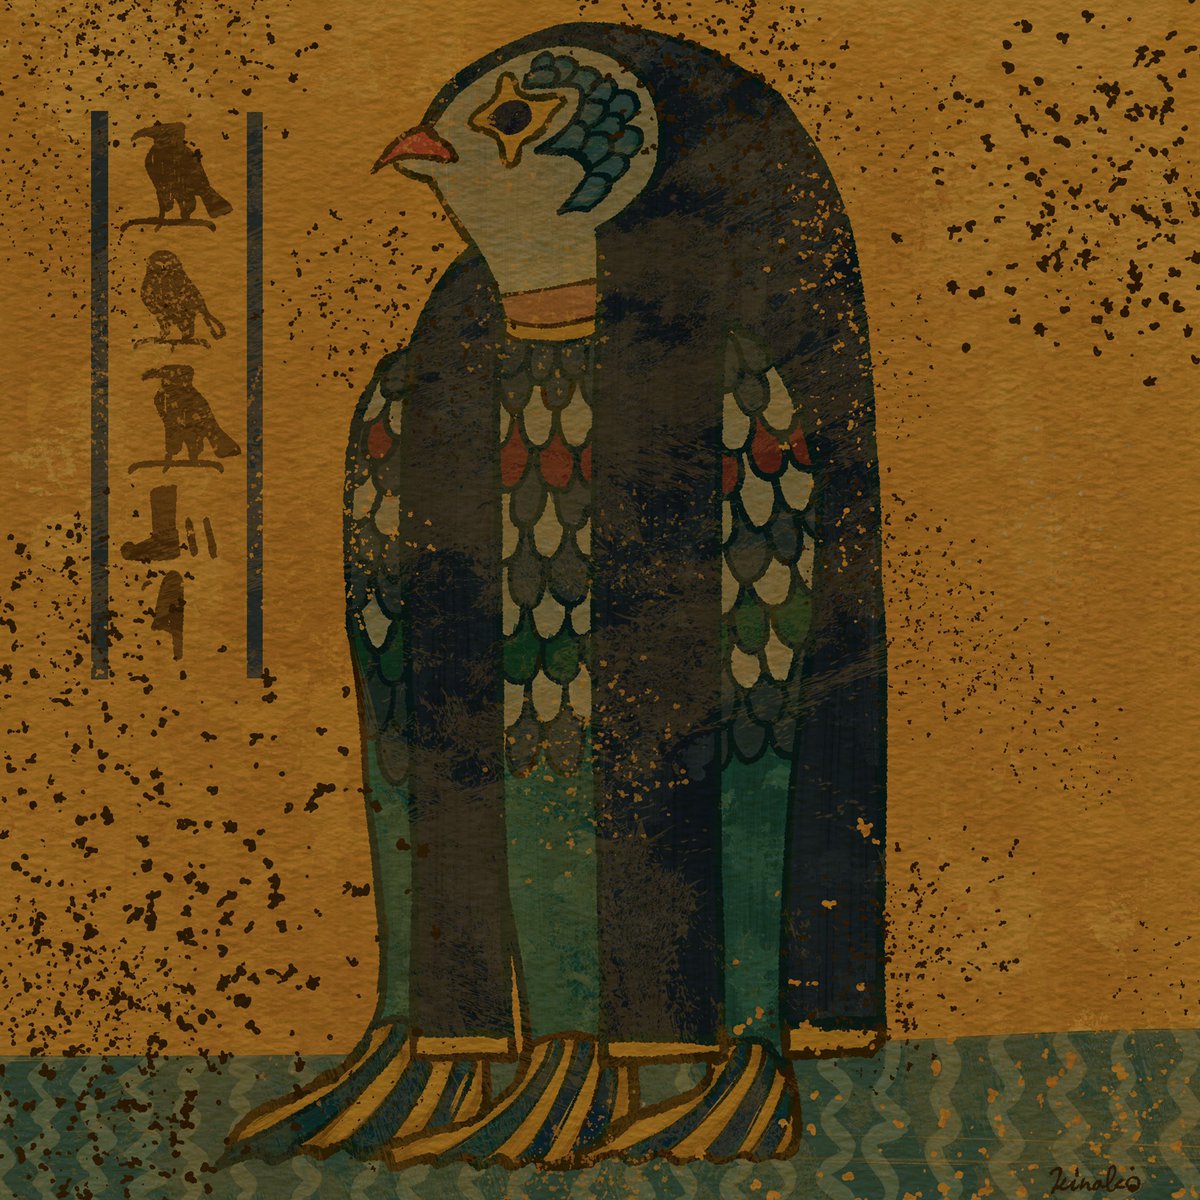 Kinako 壁画イラスト On Twitter 古代エジプト壁画風のアマビエさんです 早くパンデミック収まるといいですね ネタ既出でしたら申し訳ありません アマビエ 古代エジプト風